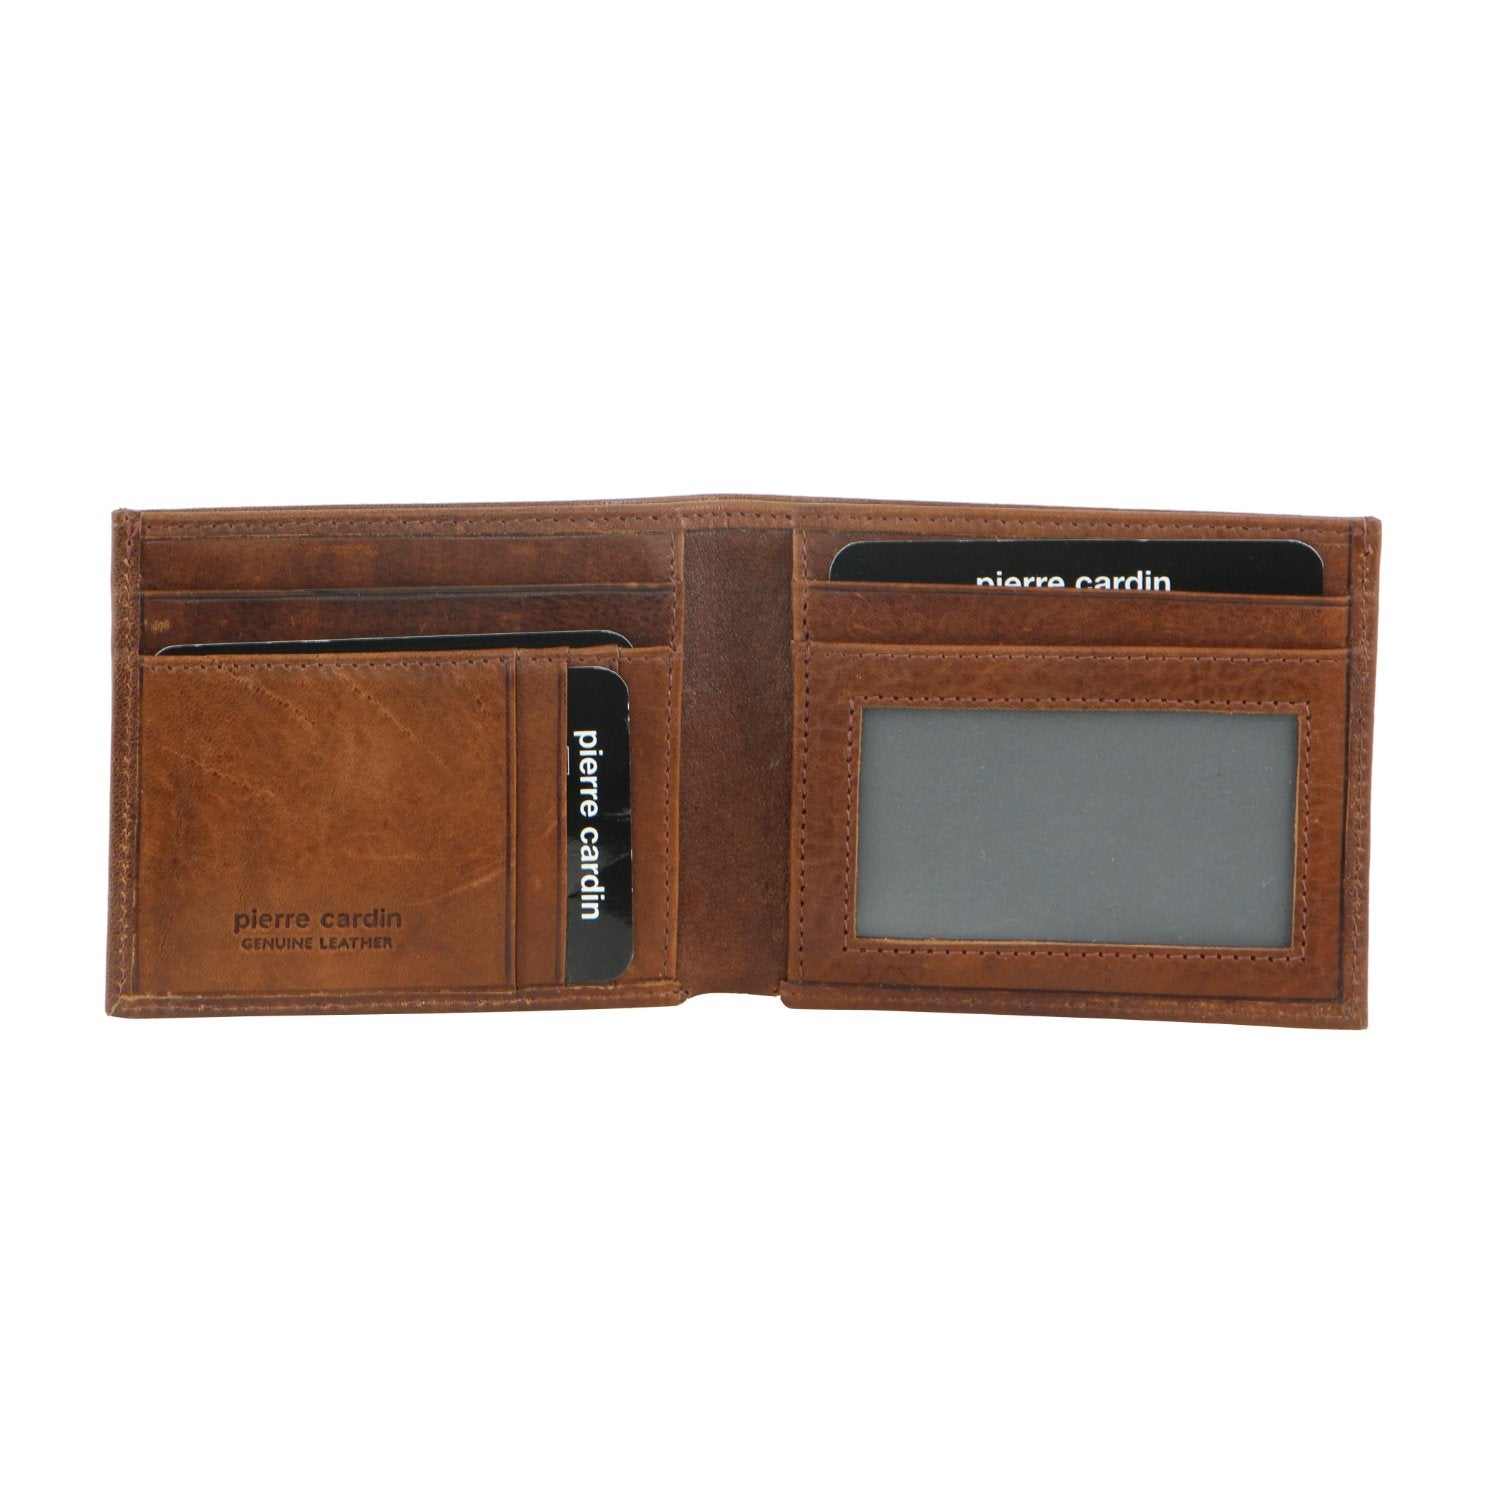 Pierre Cardin Italian Leather Bi-Fold Men's Wallet in Cognac